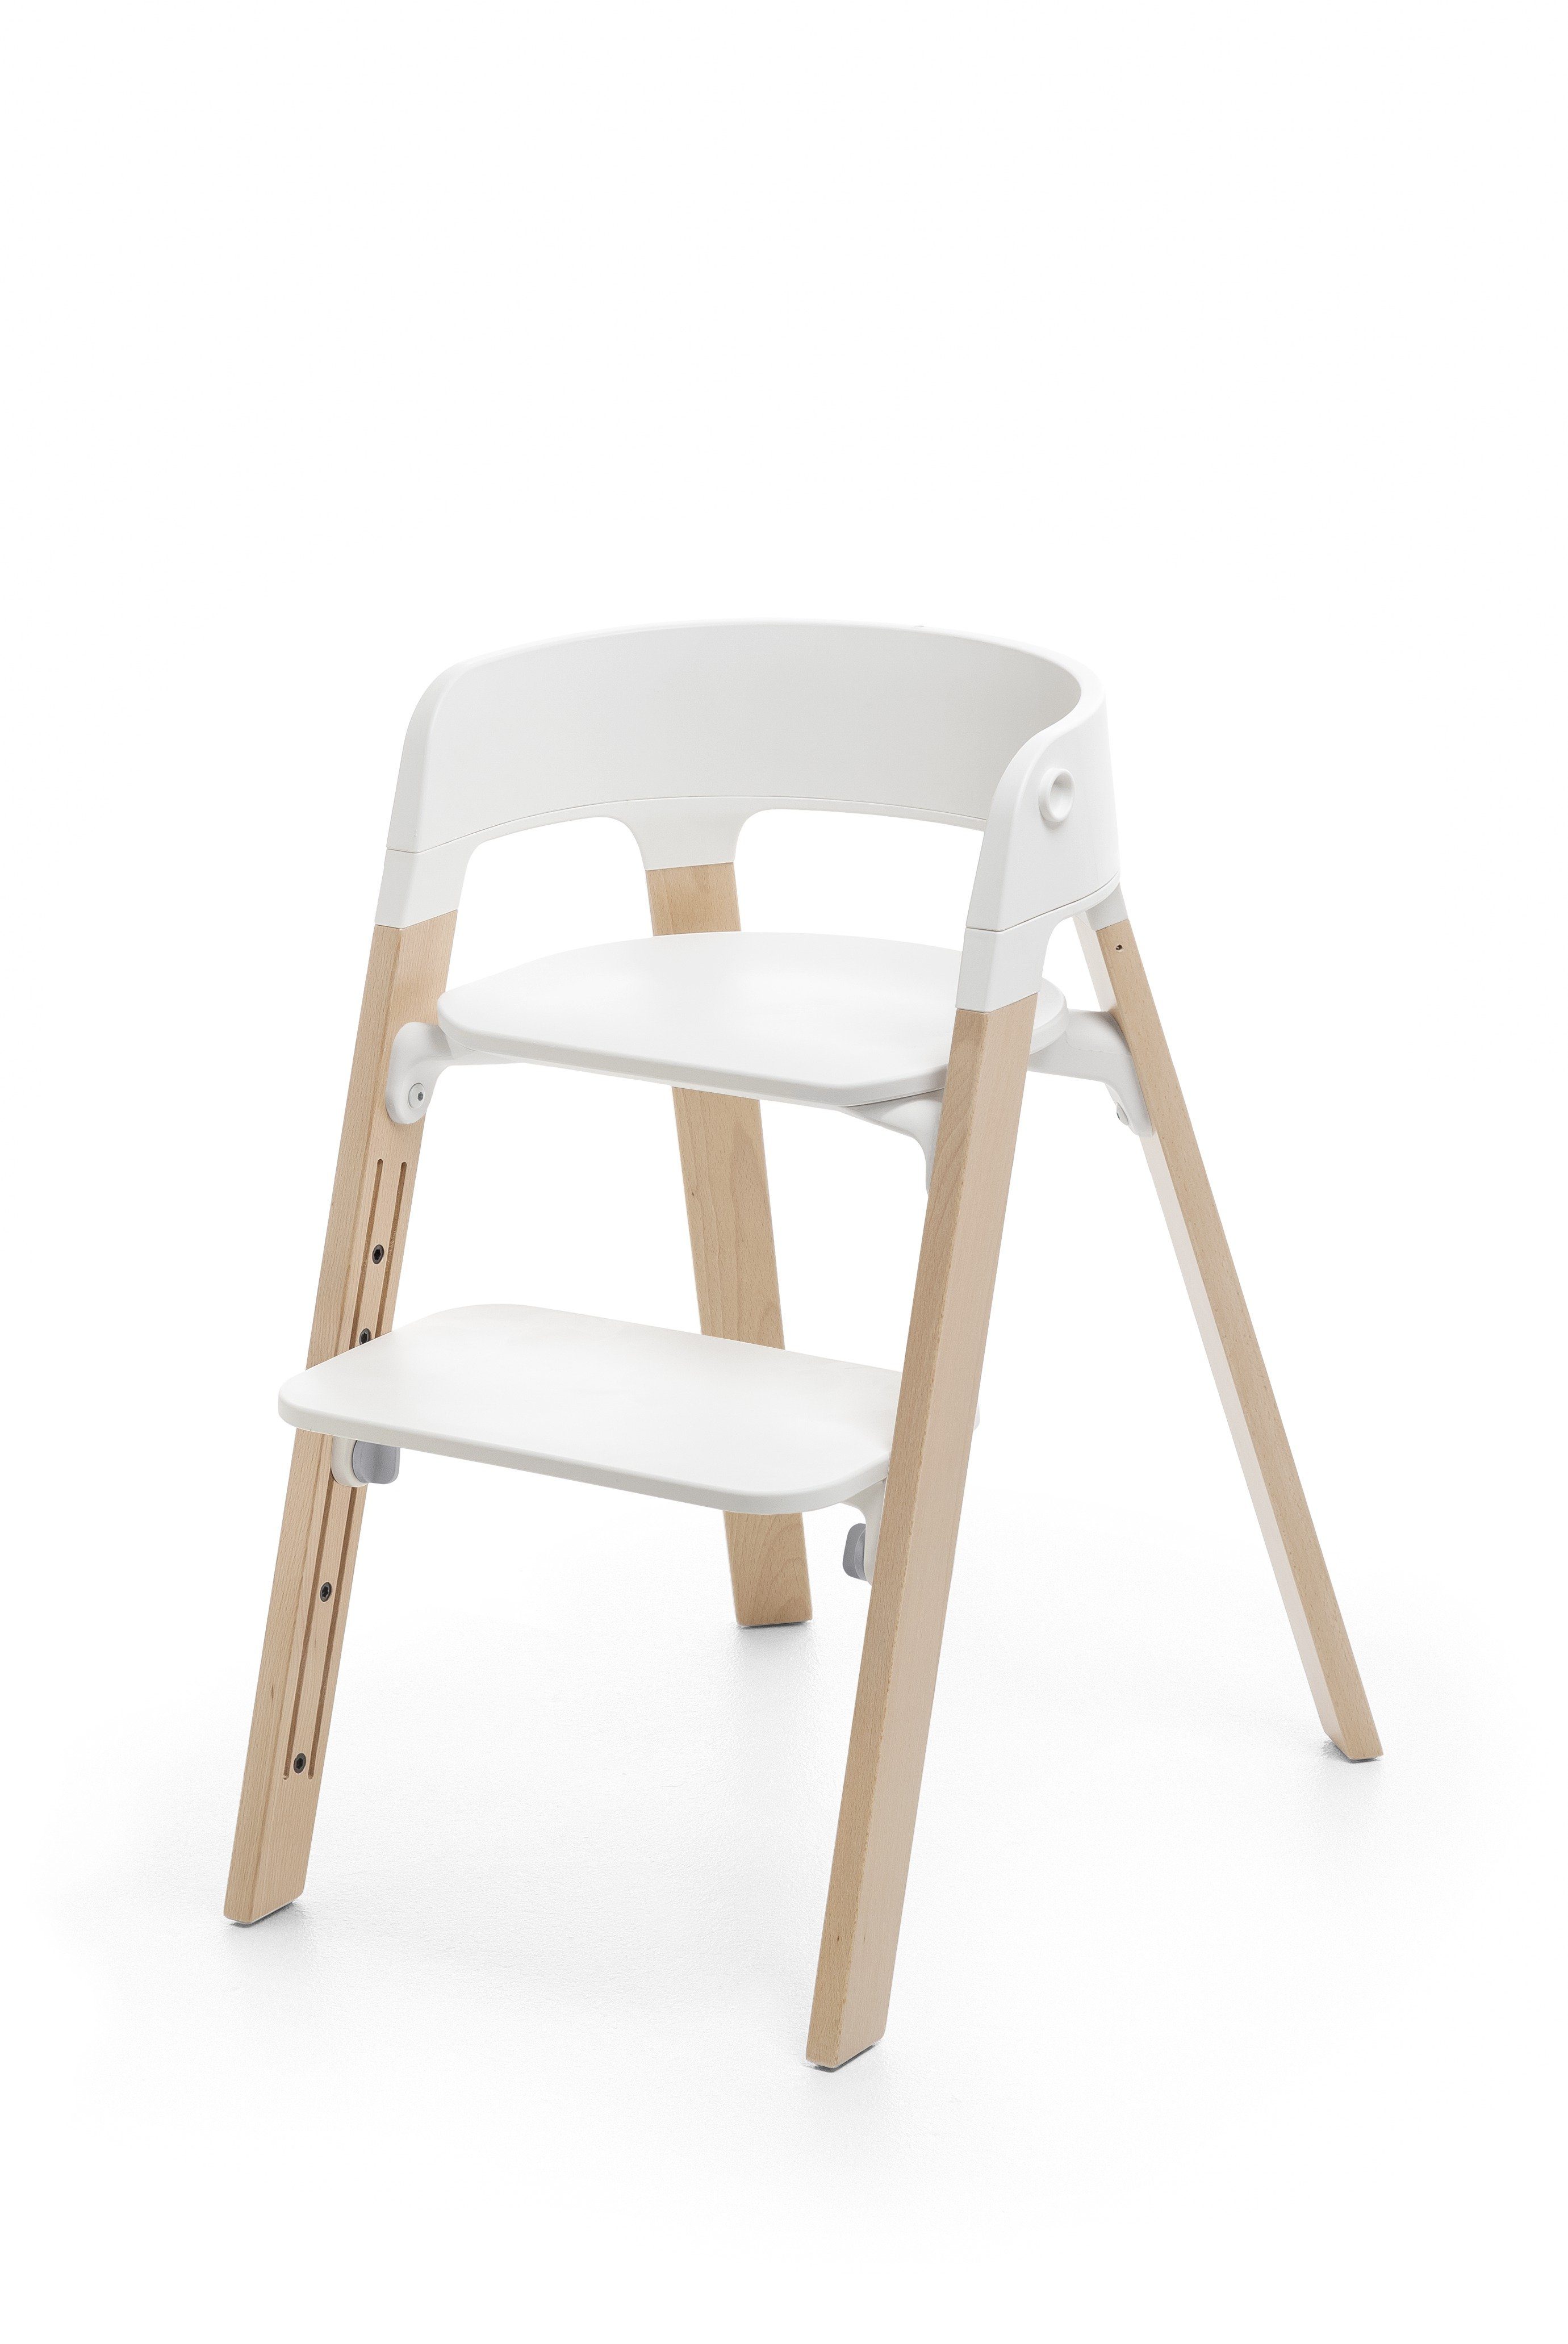 Bundle Tray Babyset Stokke - Kinderstuhl mit White/Natural plus STEPS™ Hochstuhl